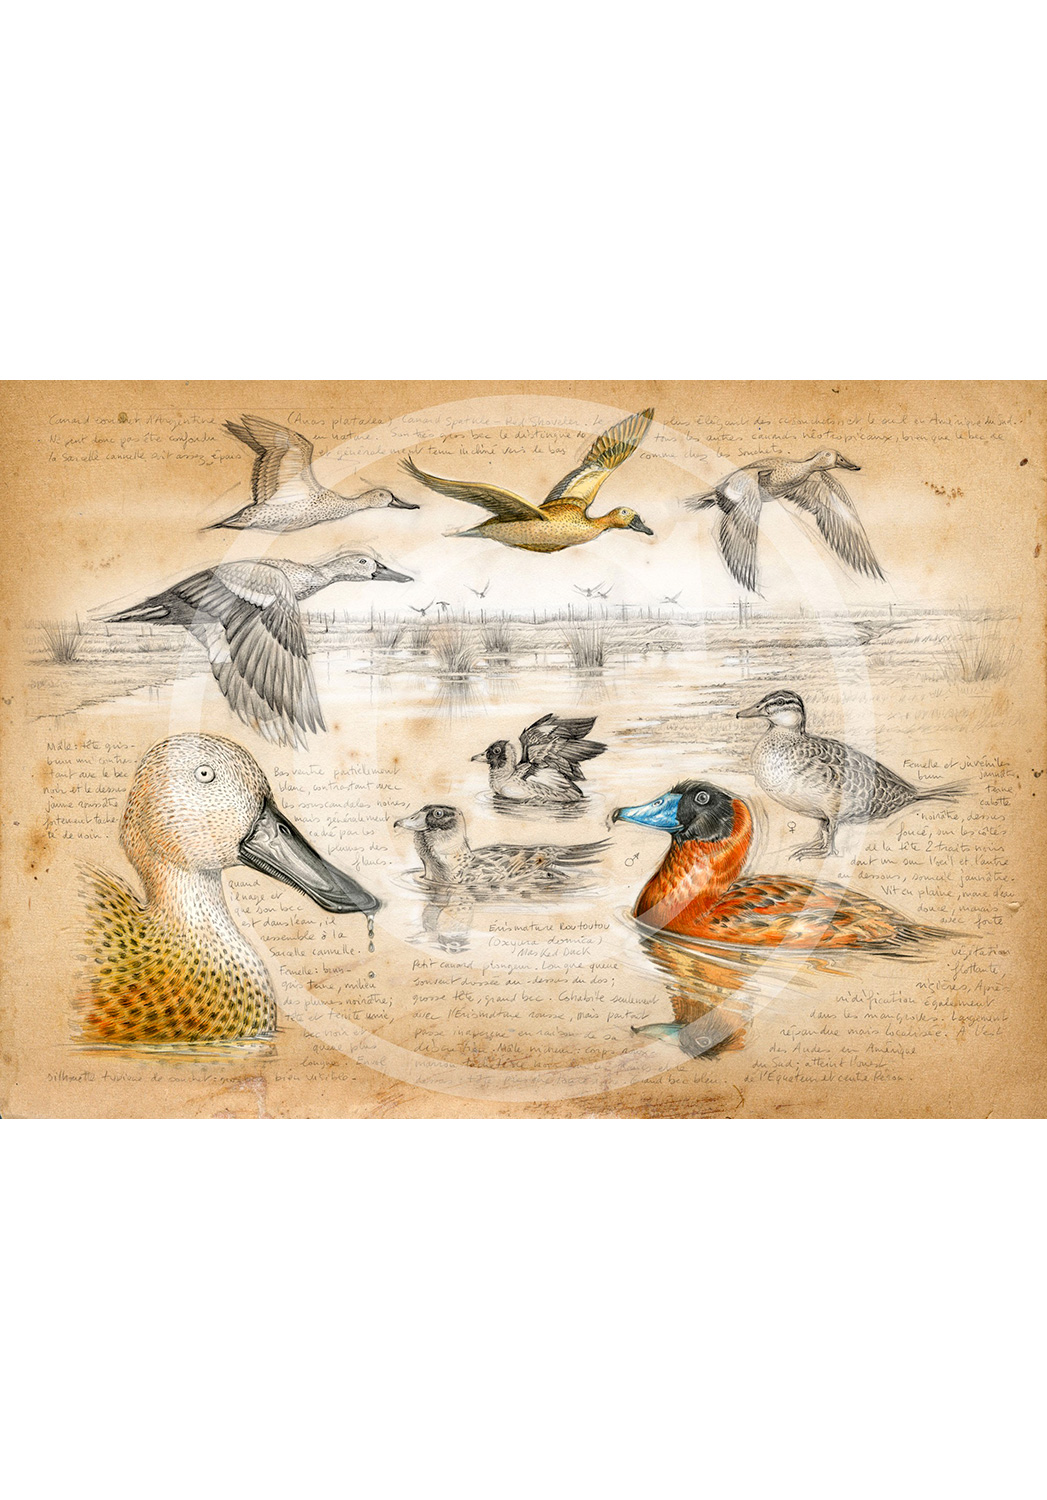 Marcello-art : Ornithologie 235 - Érismature routoutou et souchet Argentine